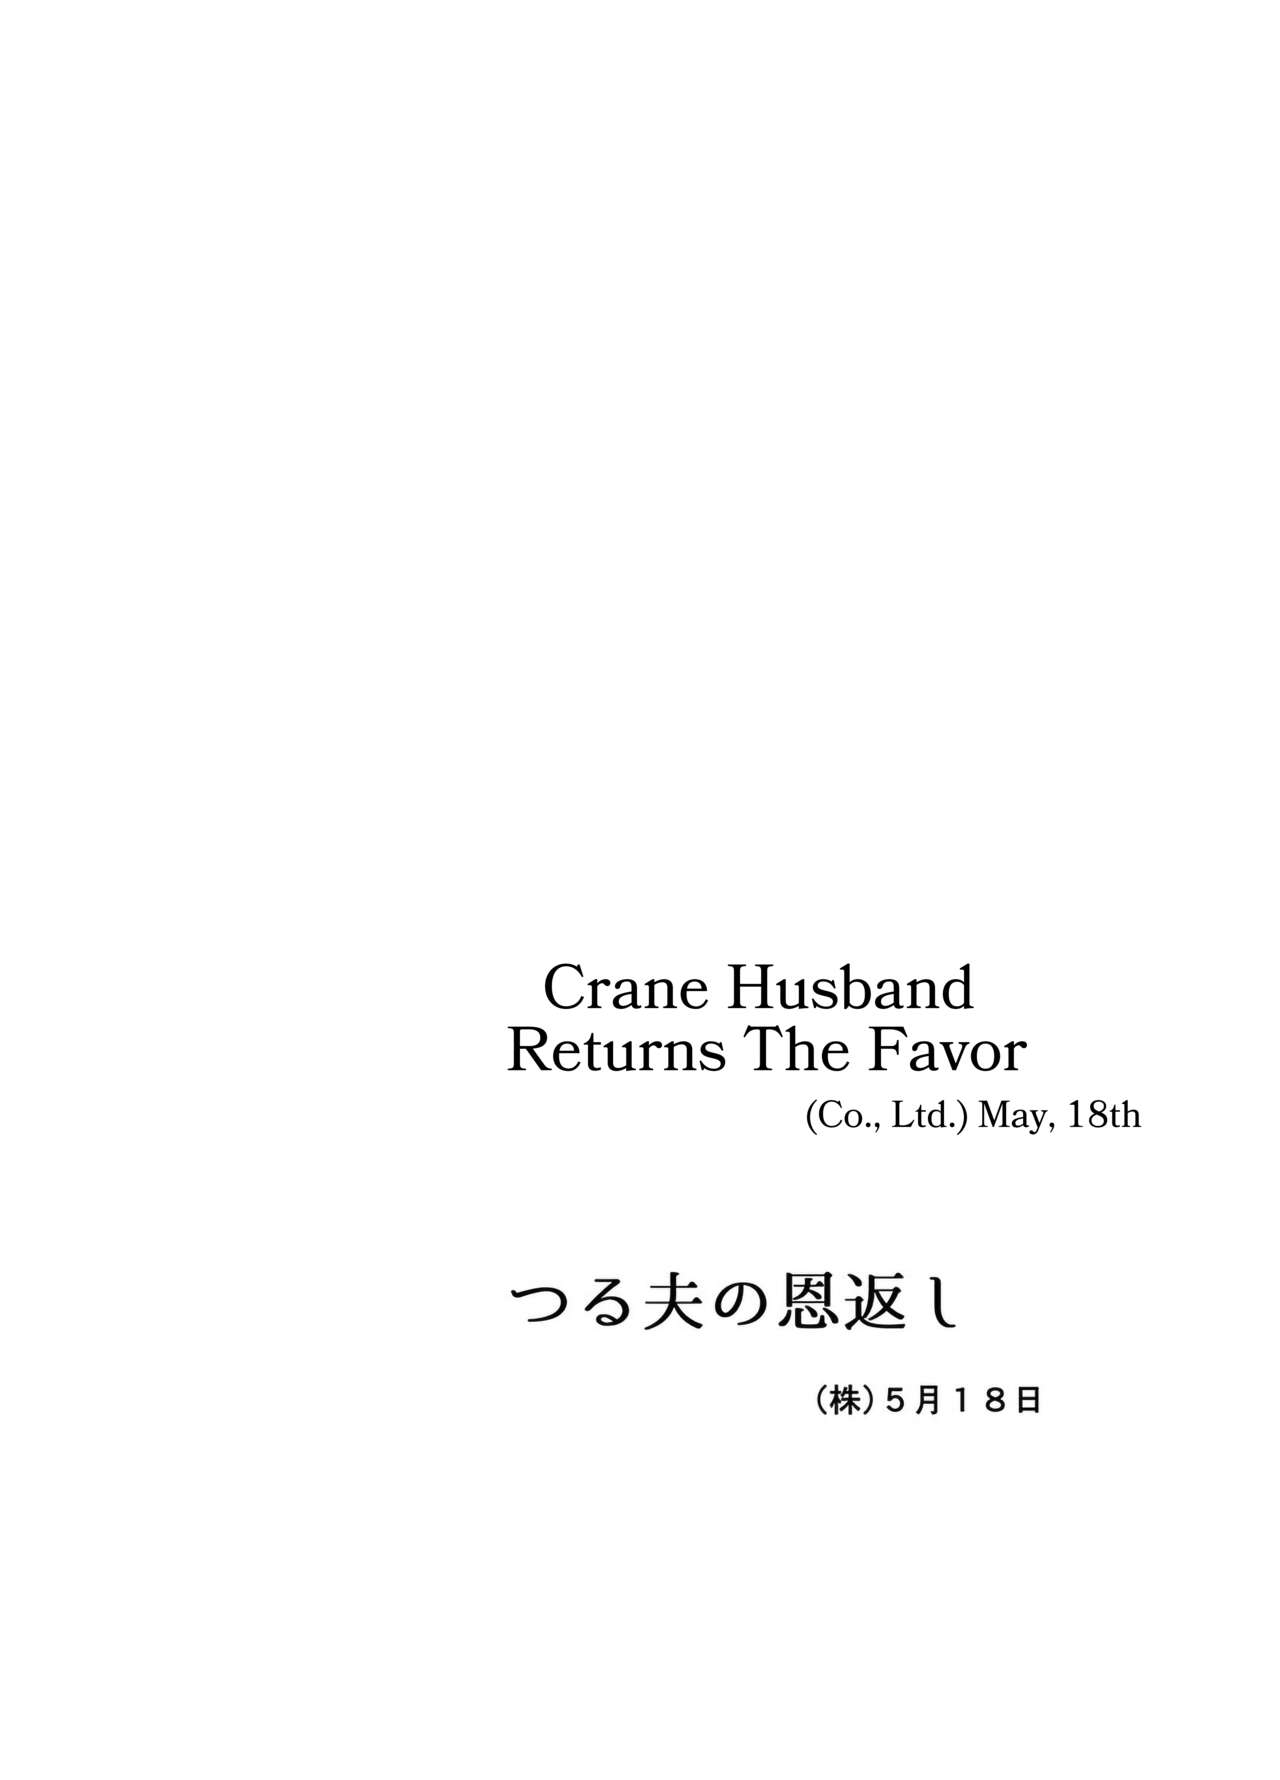 Tsuru Otto no Ongaeshi | Crane Husband Returns the Favor